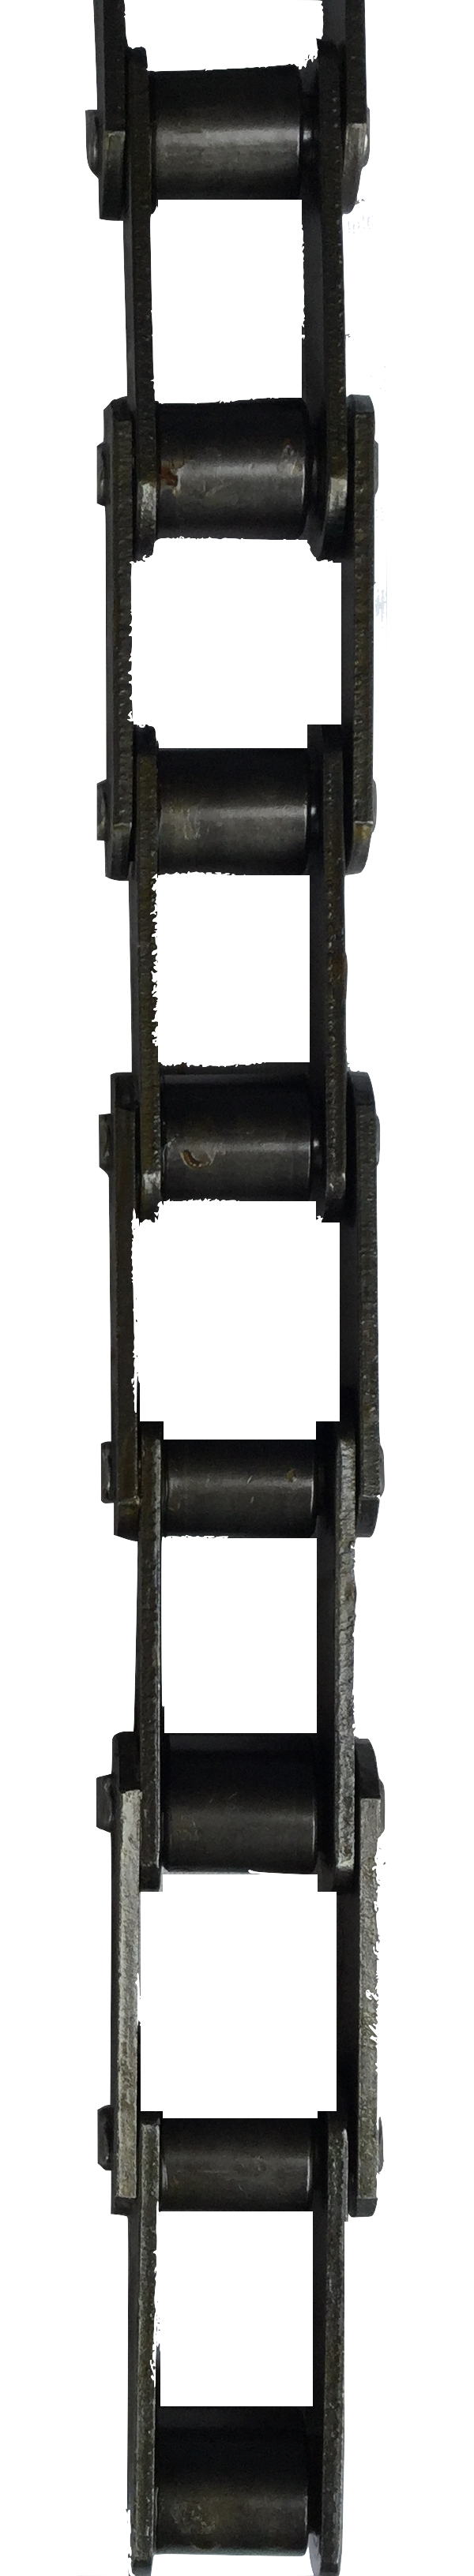 CA550 Drive Chain w/ C5EB Attachment (1.630" Pitch, 15* Angle) - Froedge Machine & Supply Co., Inc.